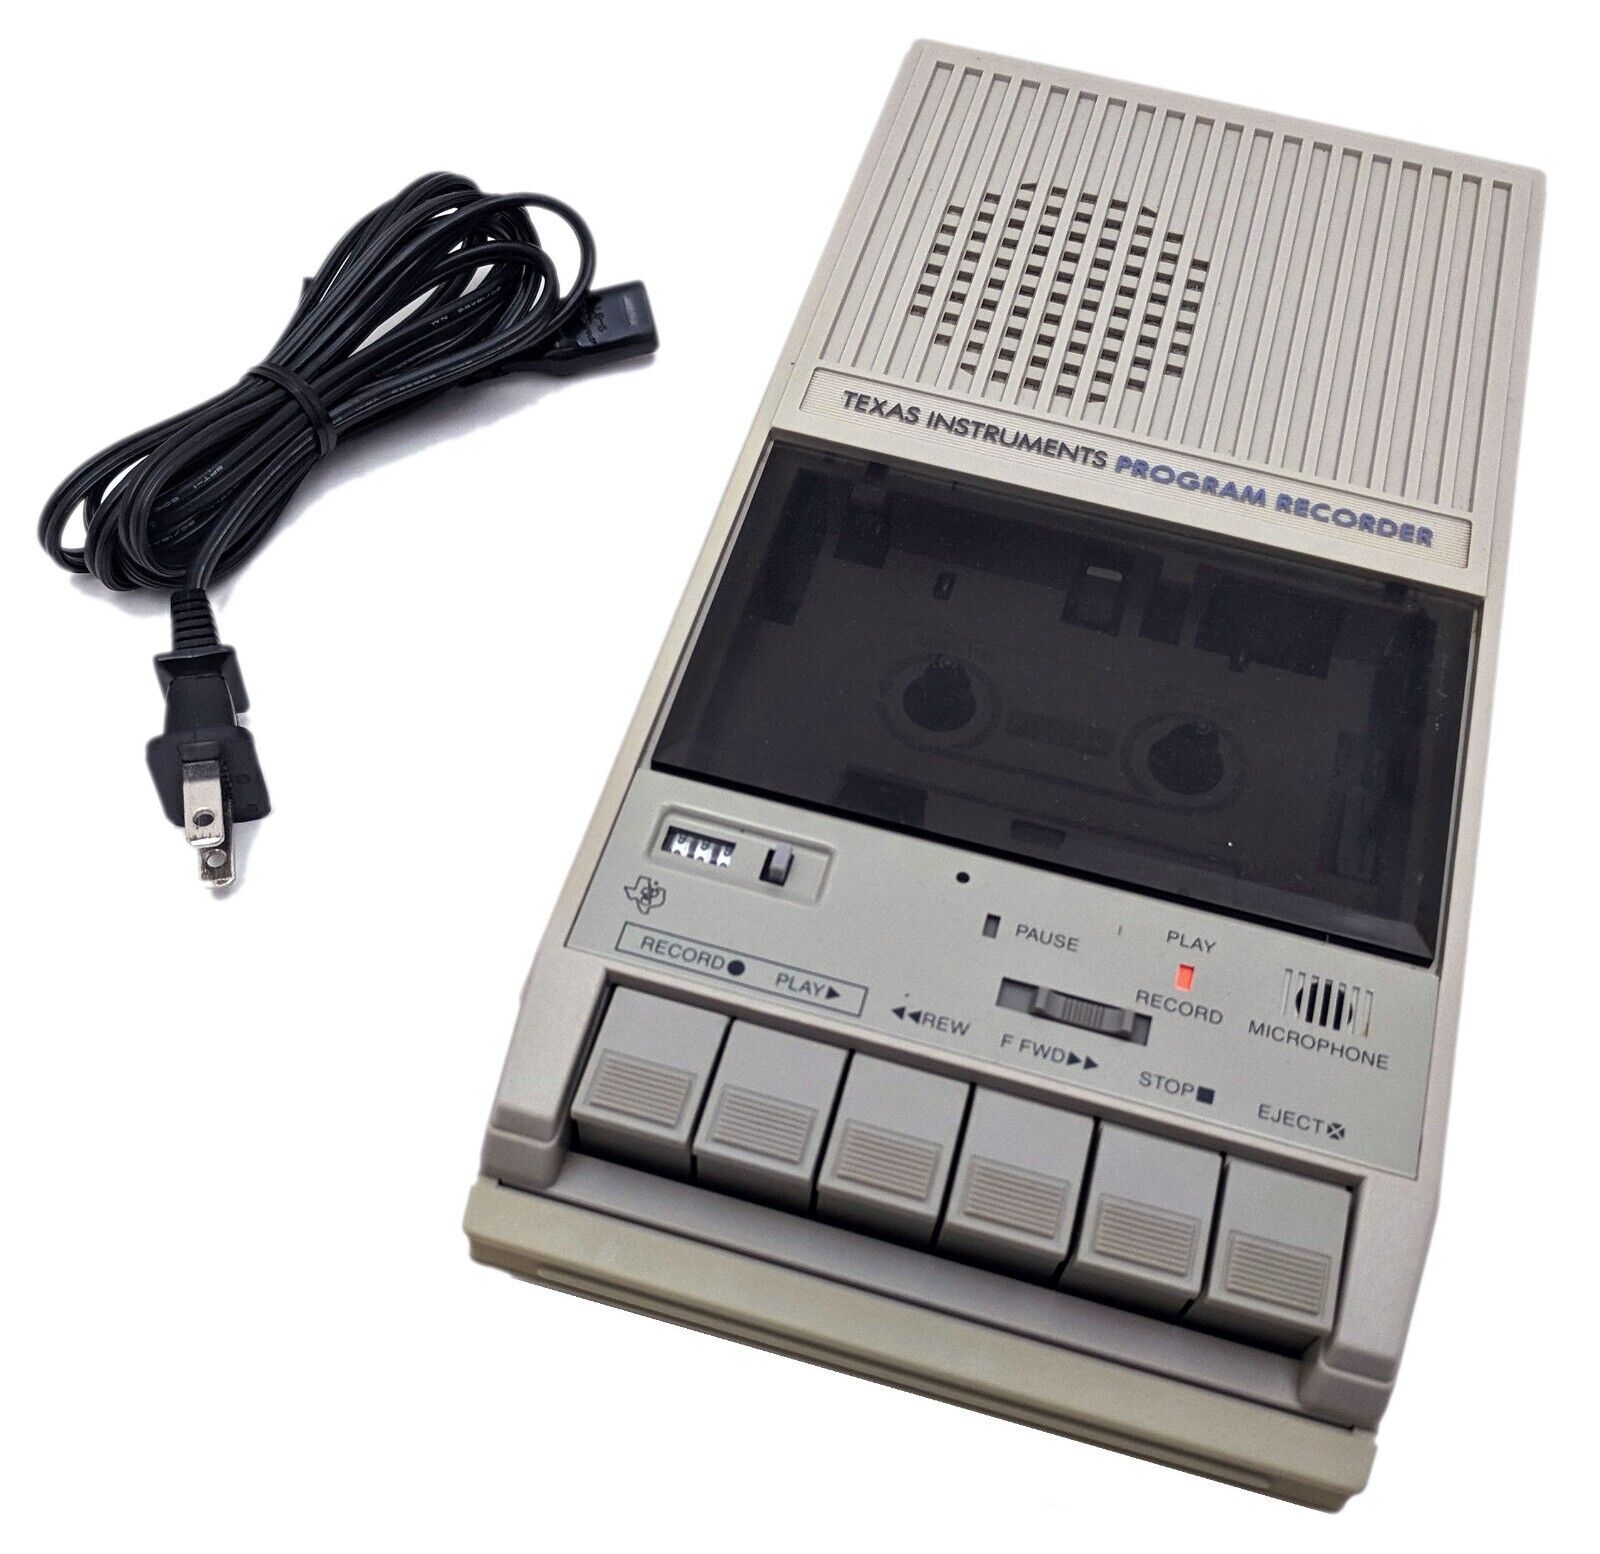 VTG 1982 TI Texas Instruments Cassette Tape Program Recorder Model PHP-2700